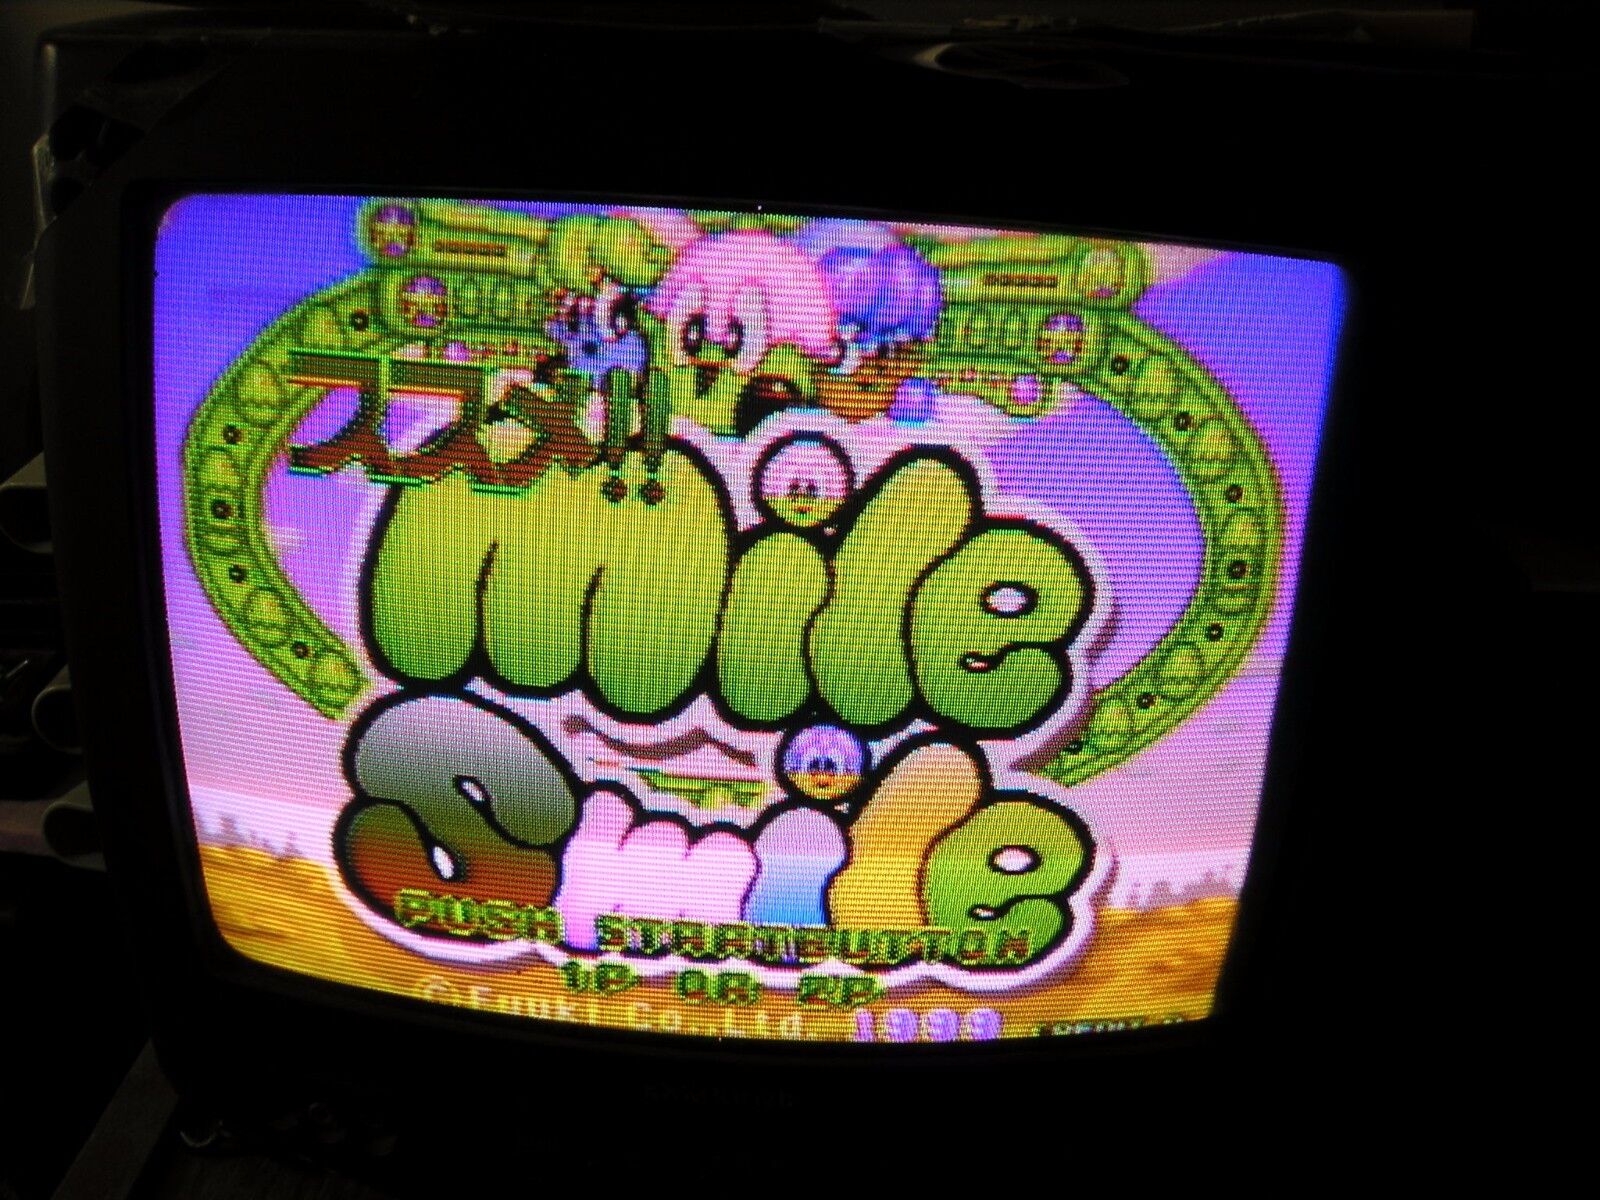 GoGo  Mile Smile  Jamma board (PCB)for Arcade game 100 % Working & Original